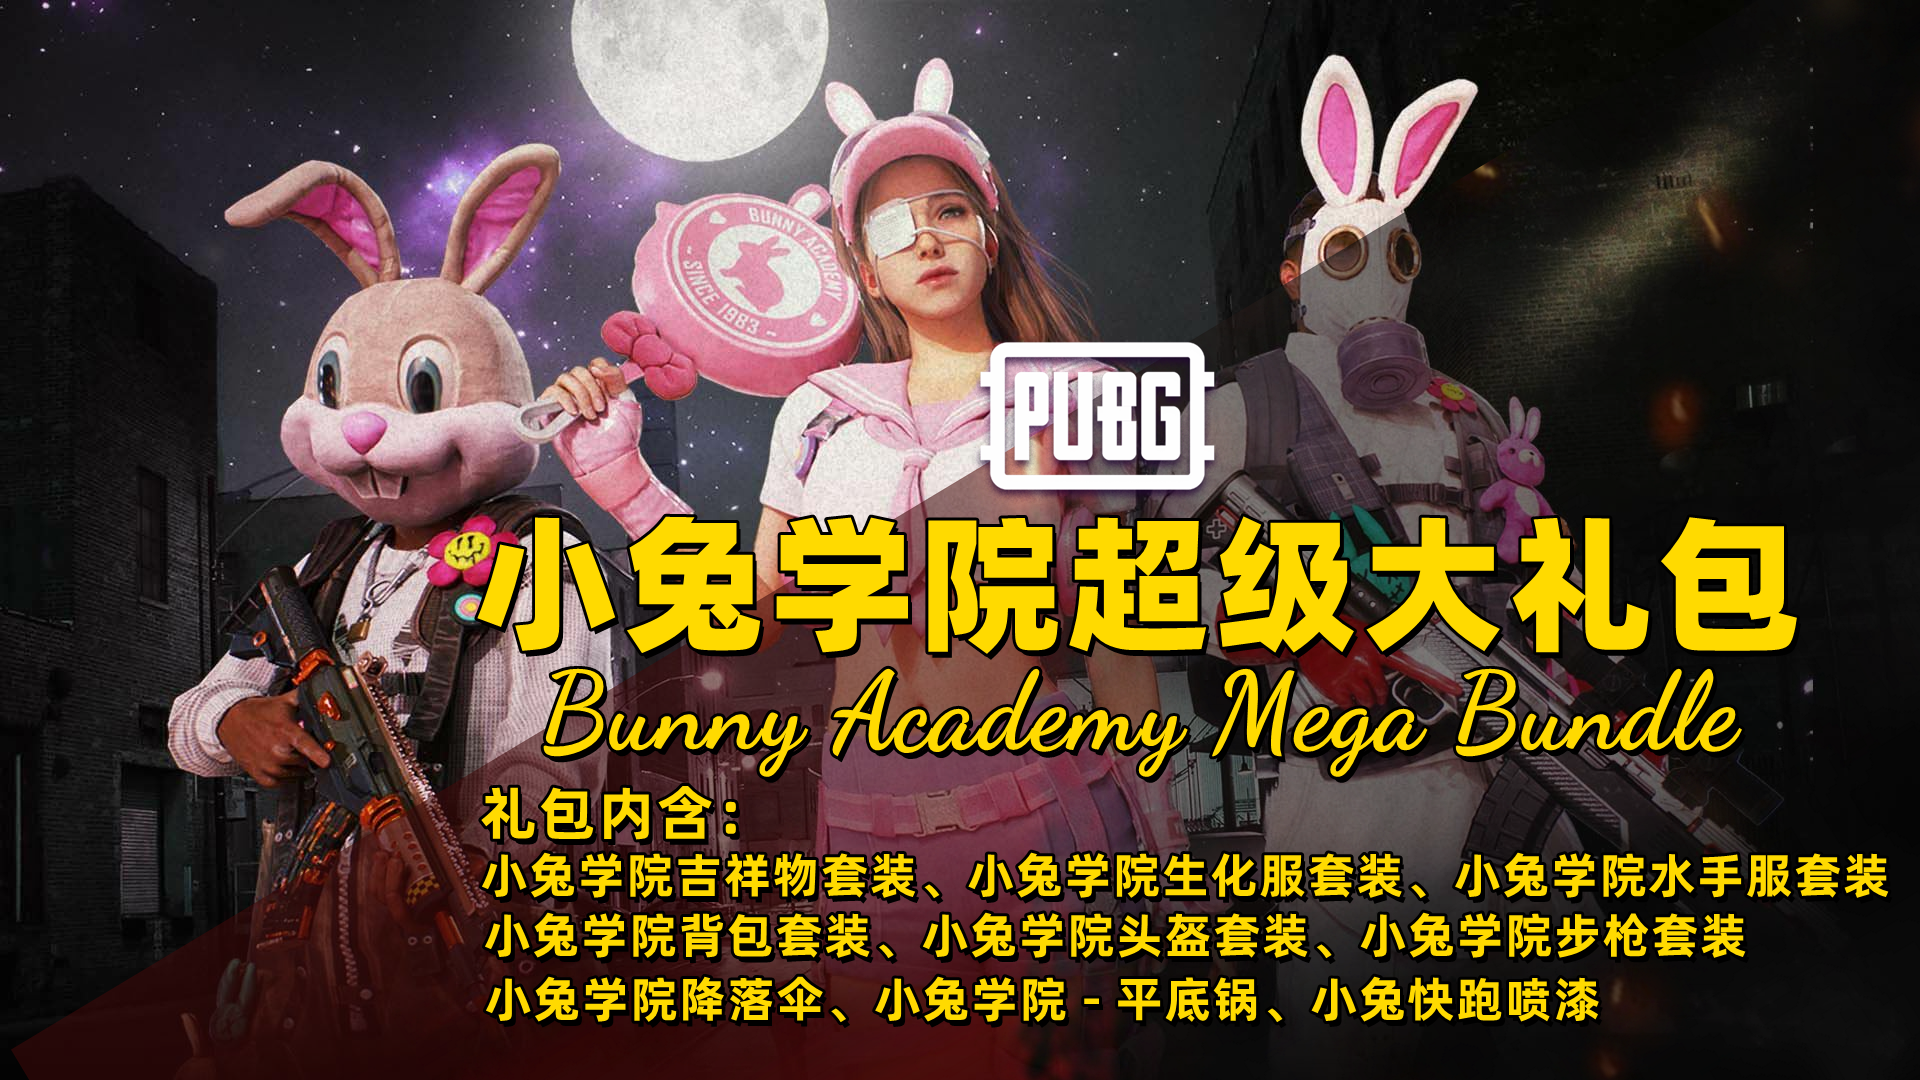 PUBG 小兔学院超级大礼包 Bunny Academy Mega Bundle